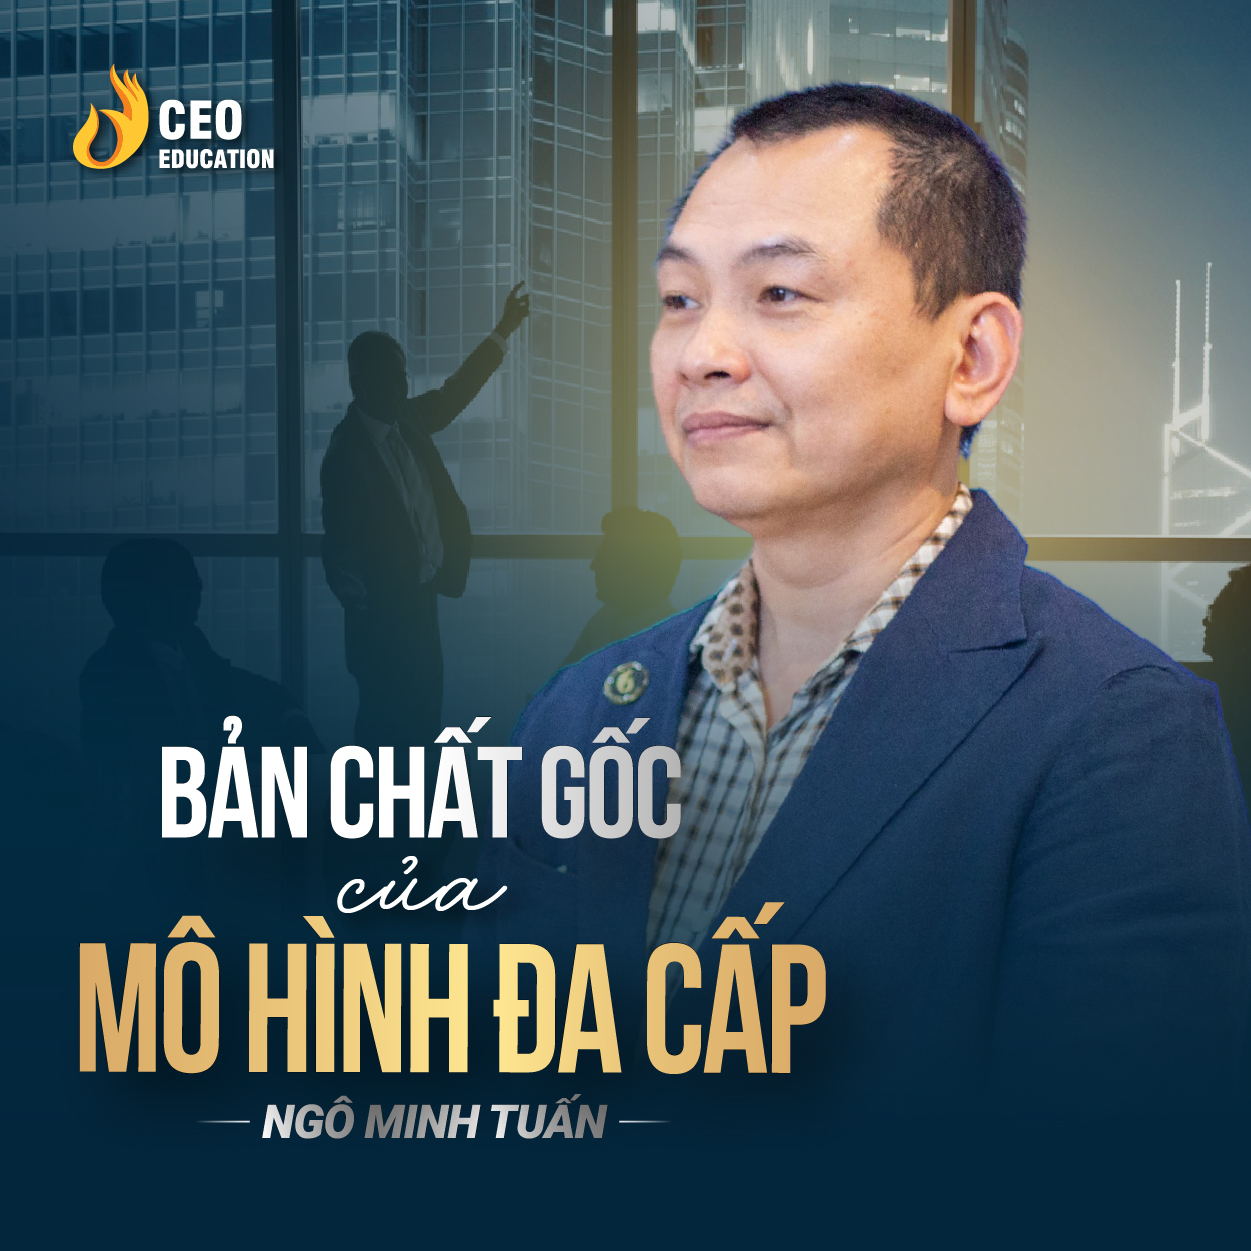 Sự thật về mô hình đa cấp | Ngô Minh Tuấn | Học Viện CEO Việt Nam